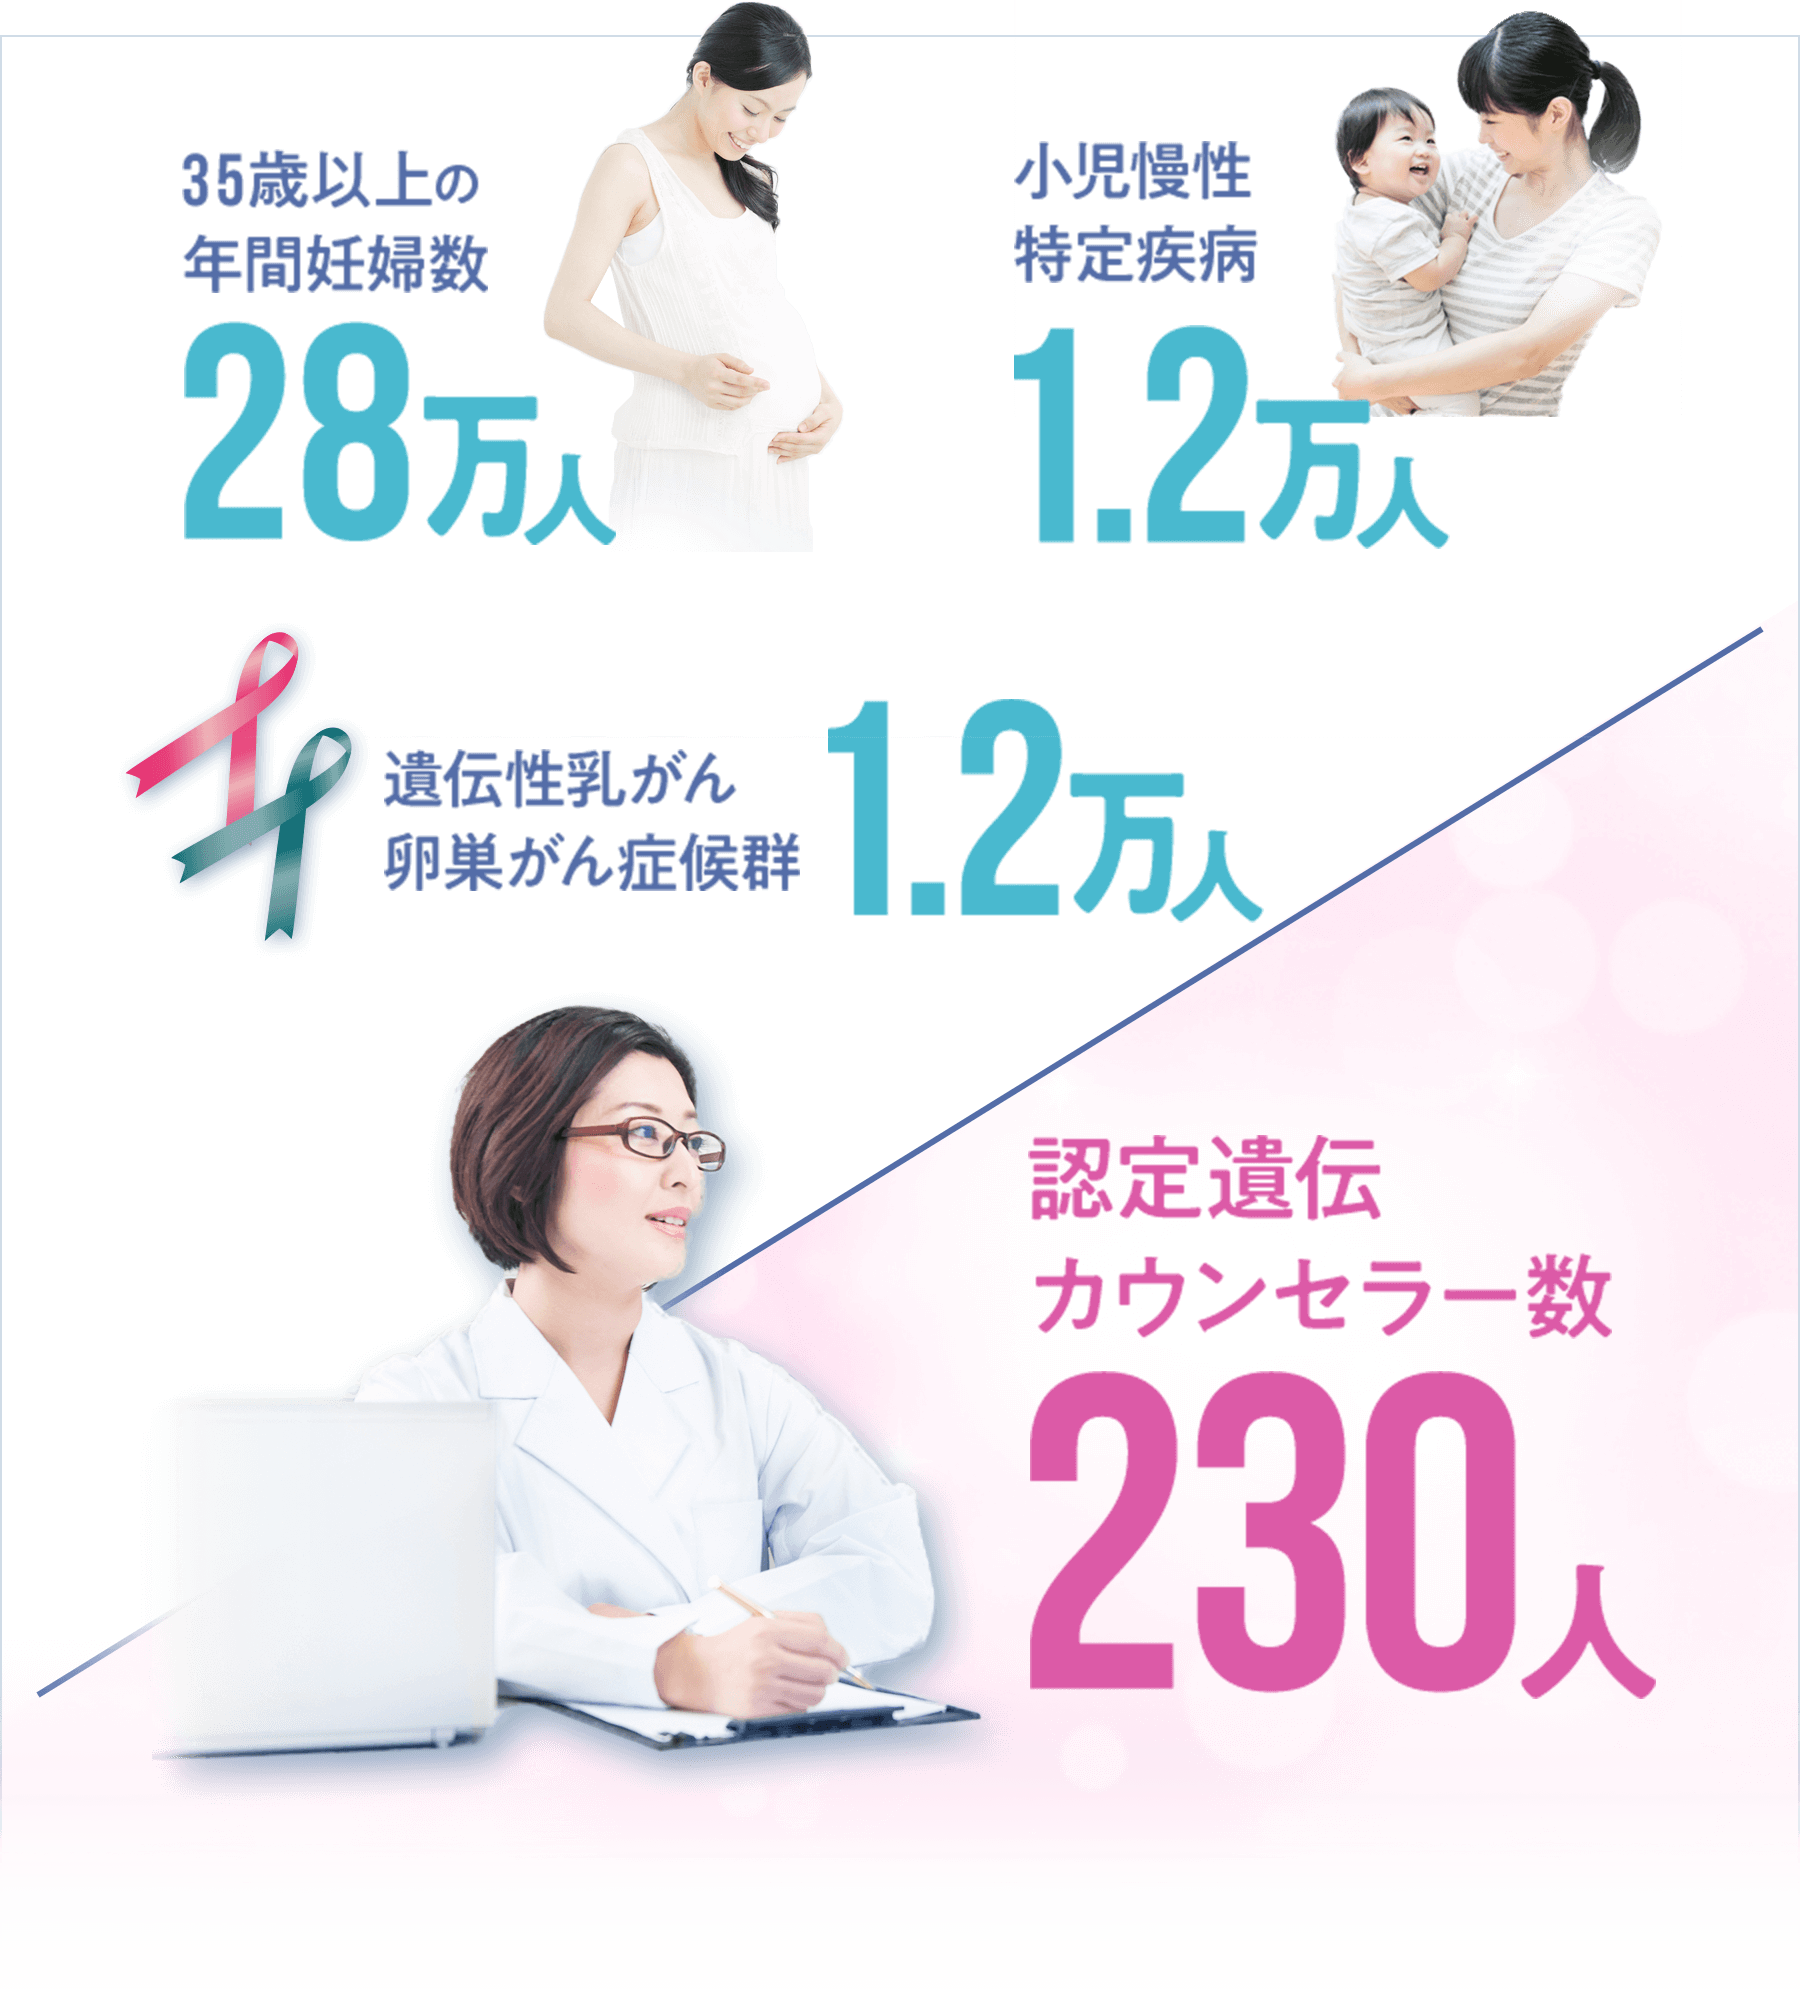 35歳以上の年間妊婦数28万人 小児慢性特定疾病1.2万人 遺伝性乳がん卵巣がん症候群1.2万人 認定遺伝カウンセラー数230人